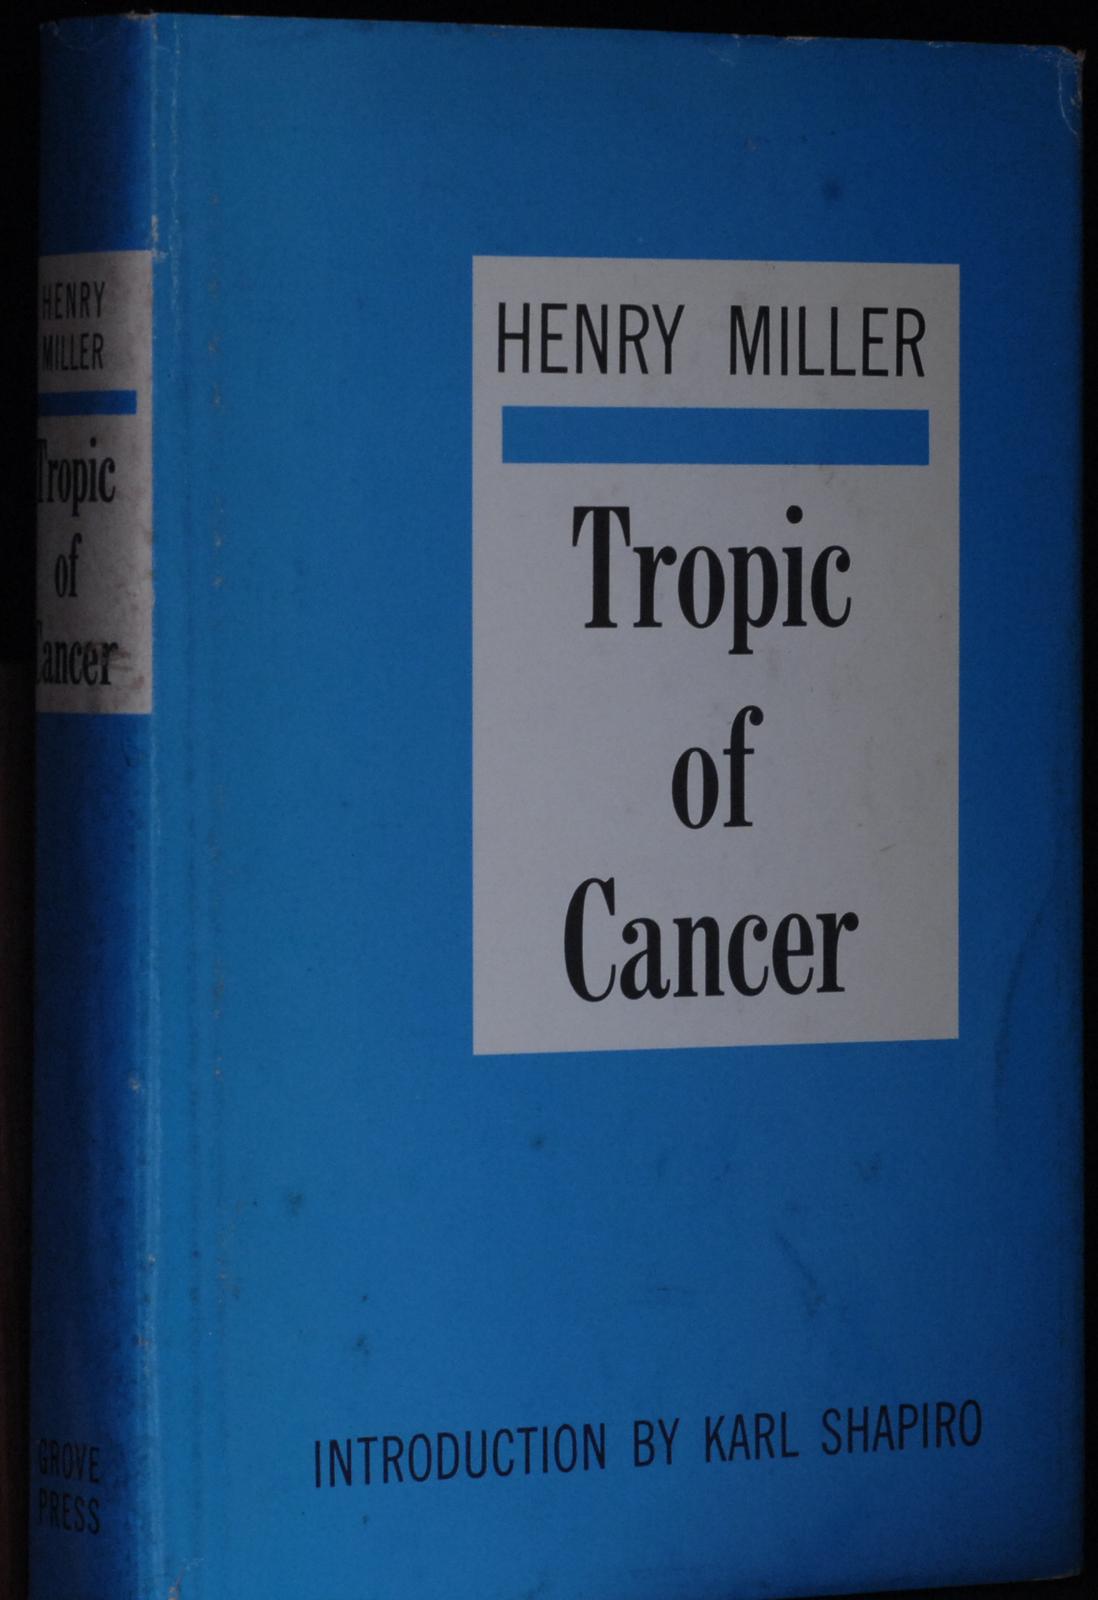 mbb005950c_-_Miller_Henry_-_Tropic_Of_Cancer.jpg